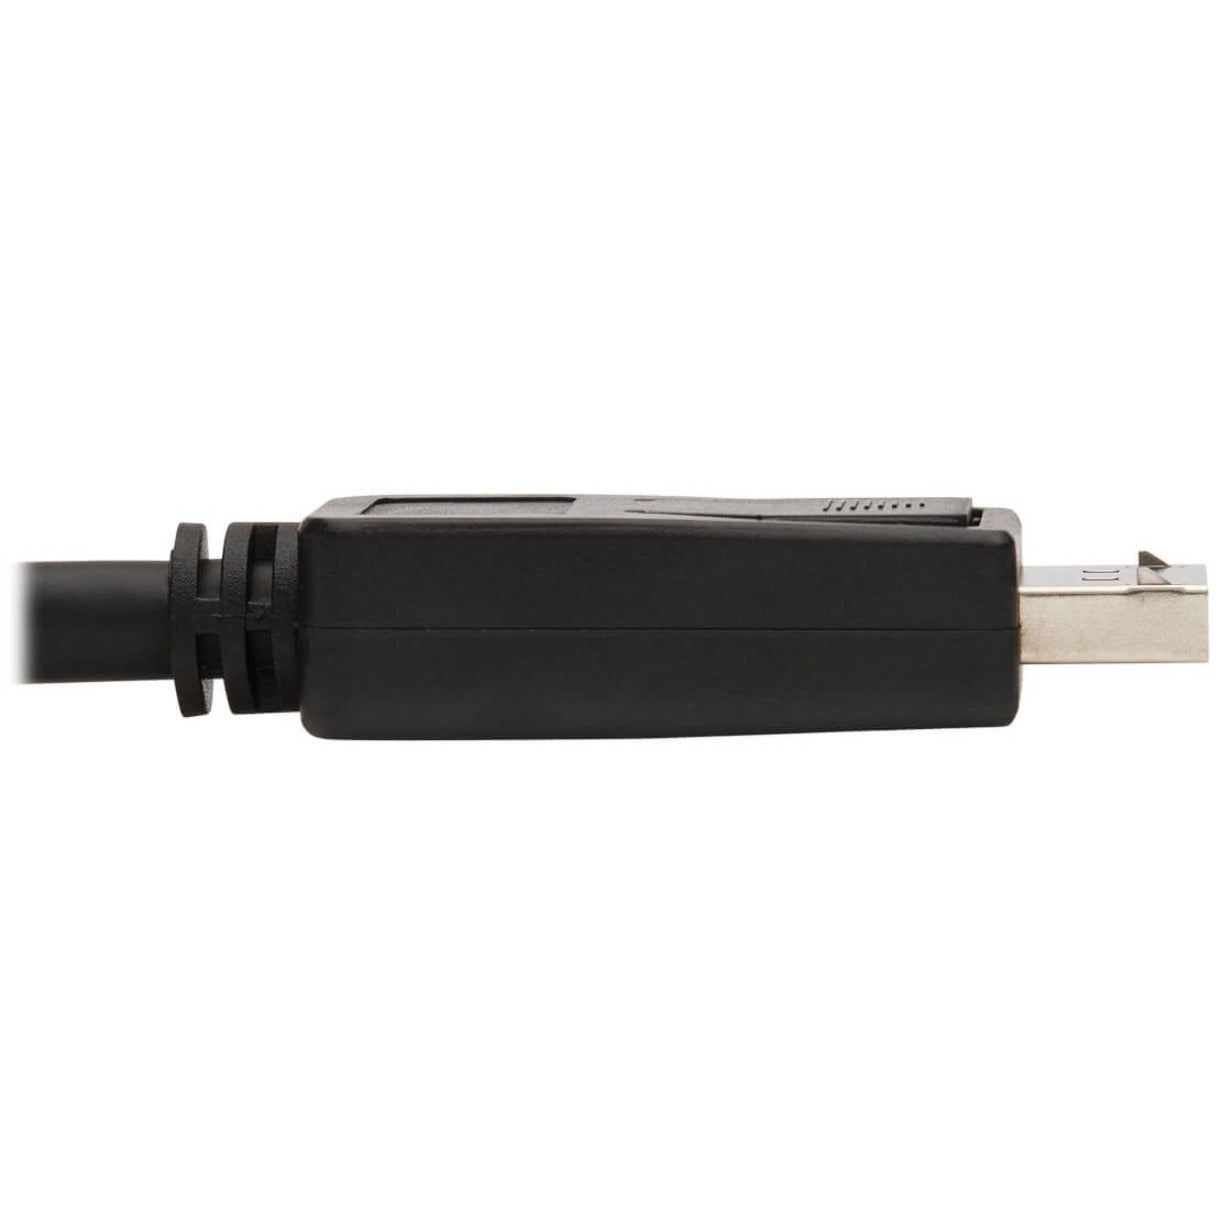 Tripp Lite P582-020-4K6AE DisplayPort to HDMI 4K Cable - M/M, 20 ft., Black, HDCP 2.2, Plug & Play